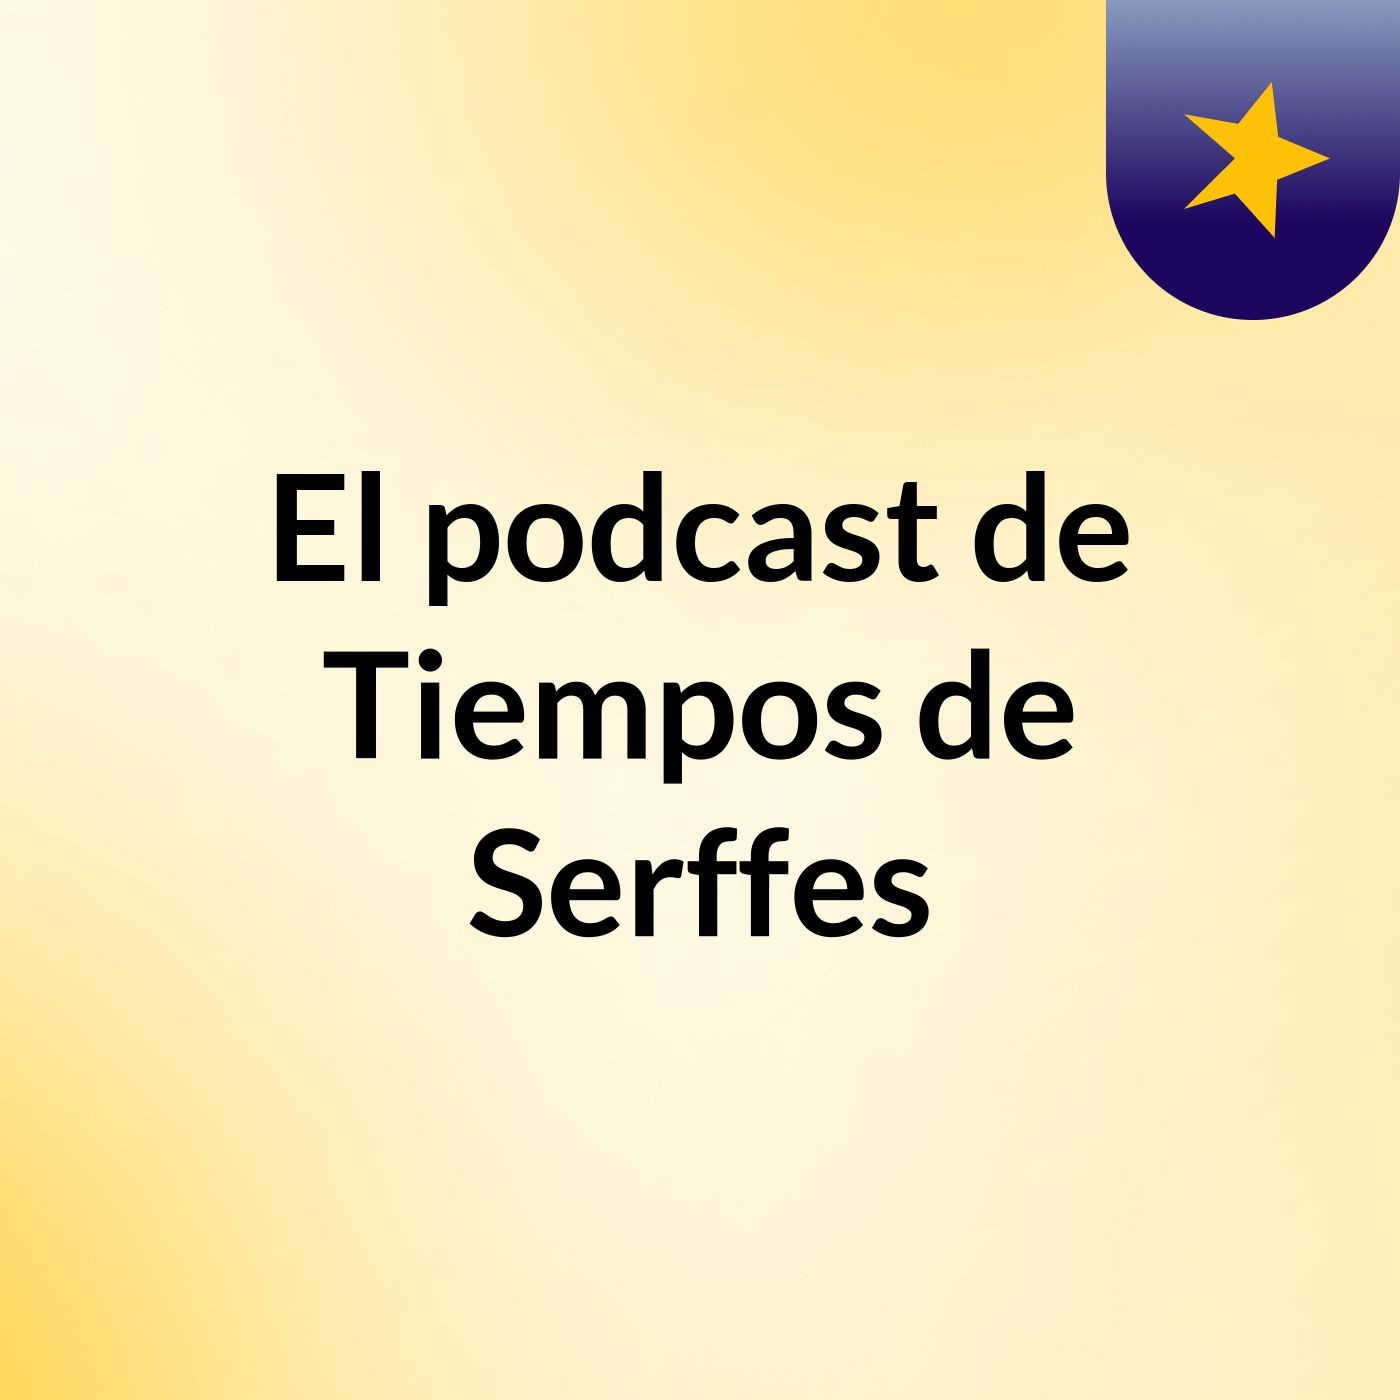 Episodio 31 - El podcast de Tiempos de Serffes